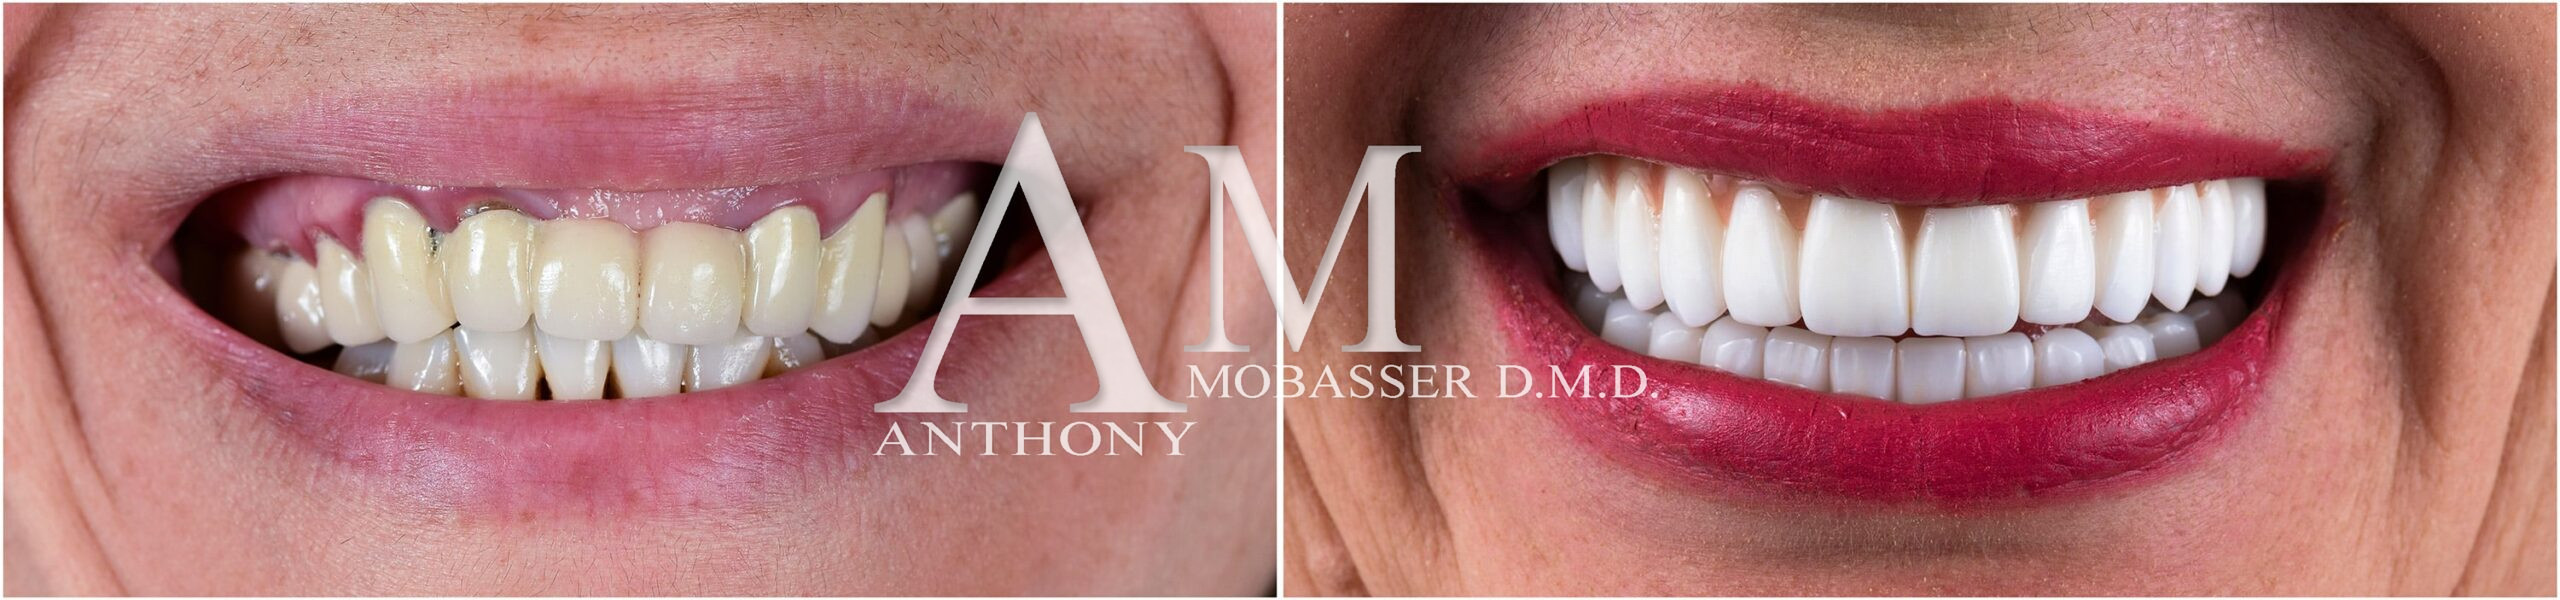 Il miglior dentista estetico del mondo | Dr. Anthony Mobasser